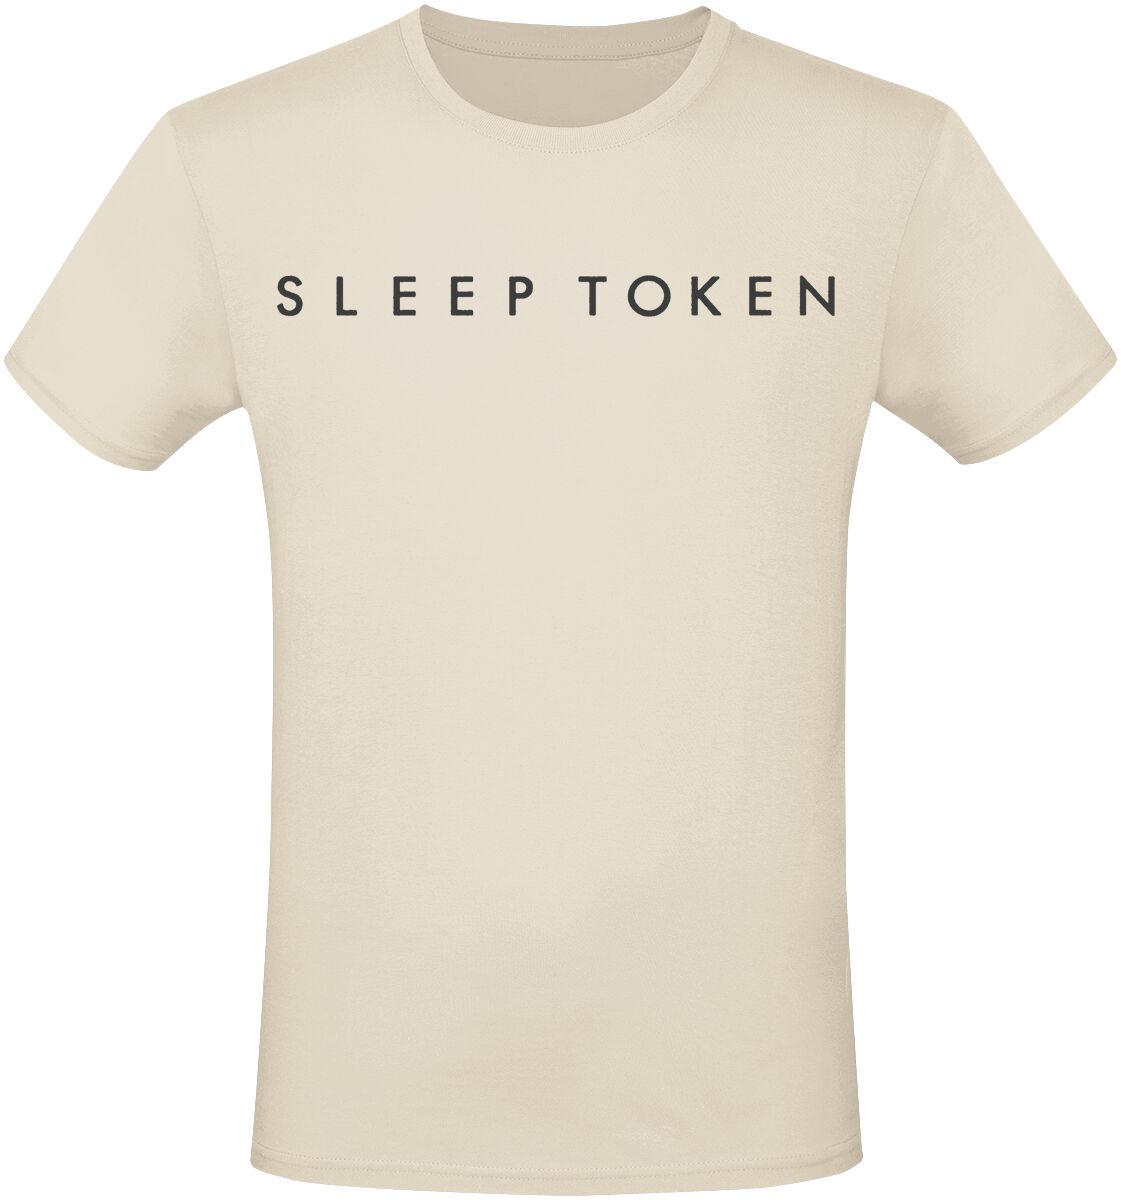 Sleep Token T-Shirt - Take Me Back To Eden - S bis 3XL - für Männer - Größe 3XL - beige  - EMP exklusives Merchandise!